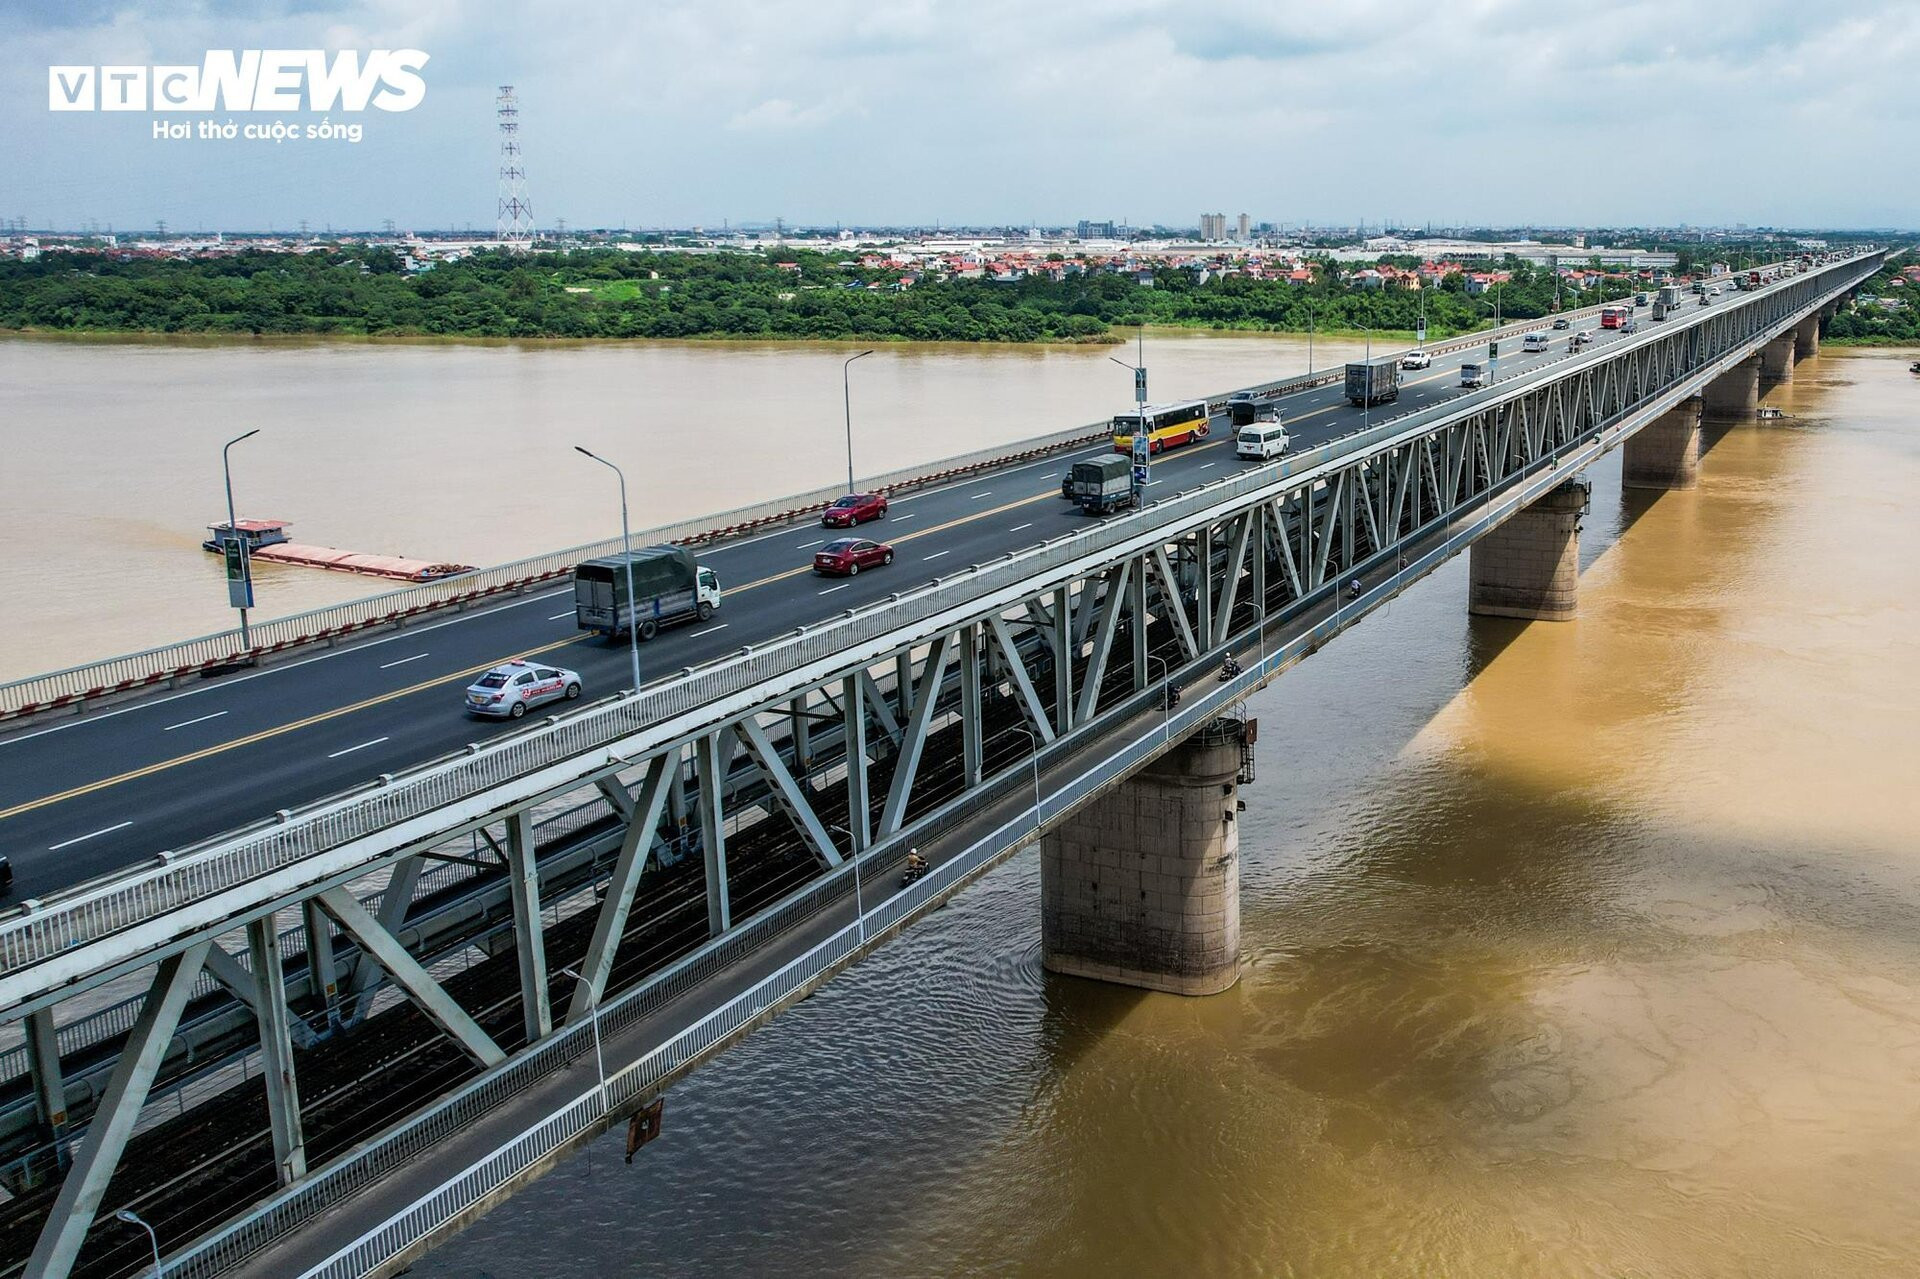 Cầu Thăng Long gần 40 năm tuổi bắc qua sông Hồng nhìn từ flycam - 8